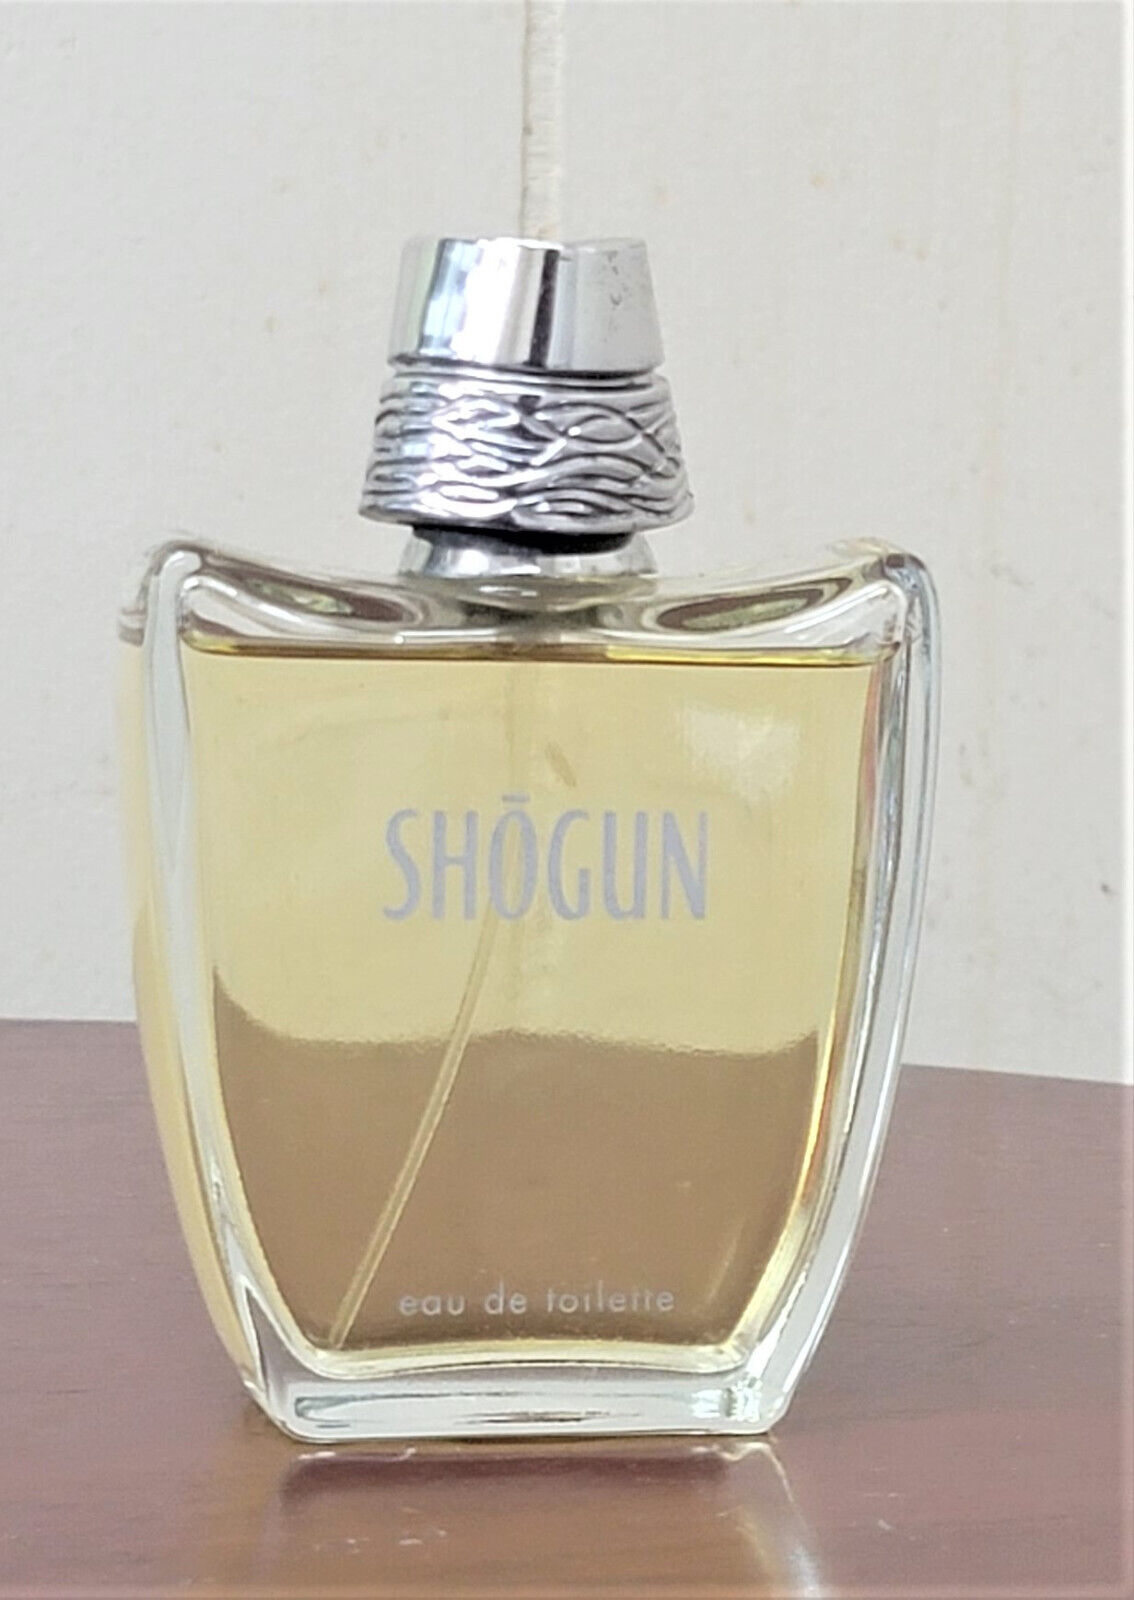 Shogun by Alain Delon 3.4 oz / 100 ml edt spray cologne pour homme men vintage 